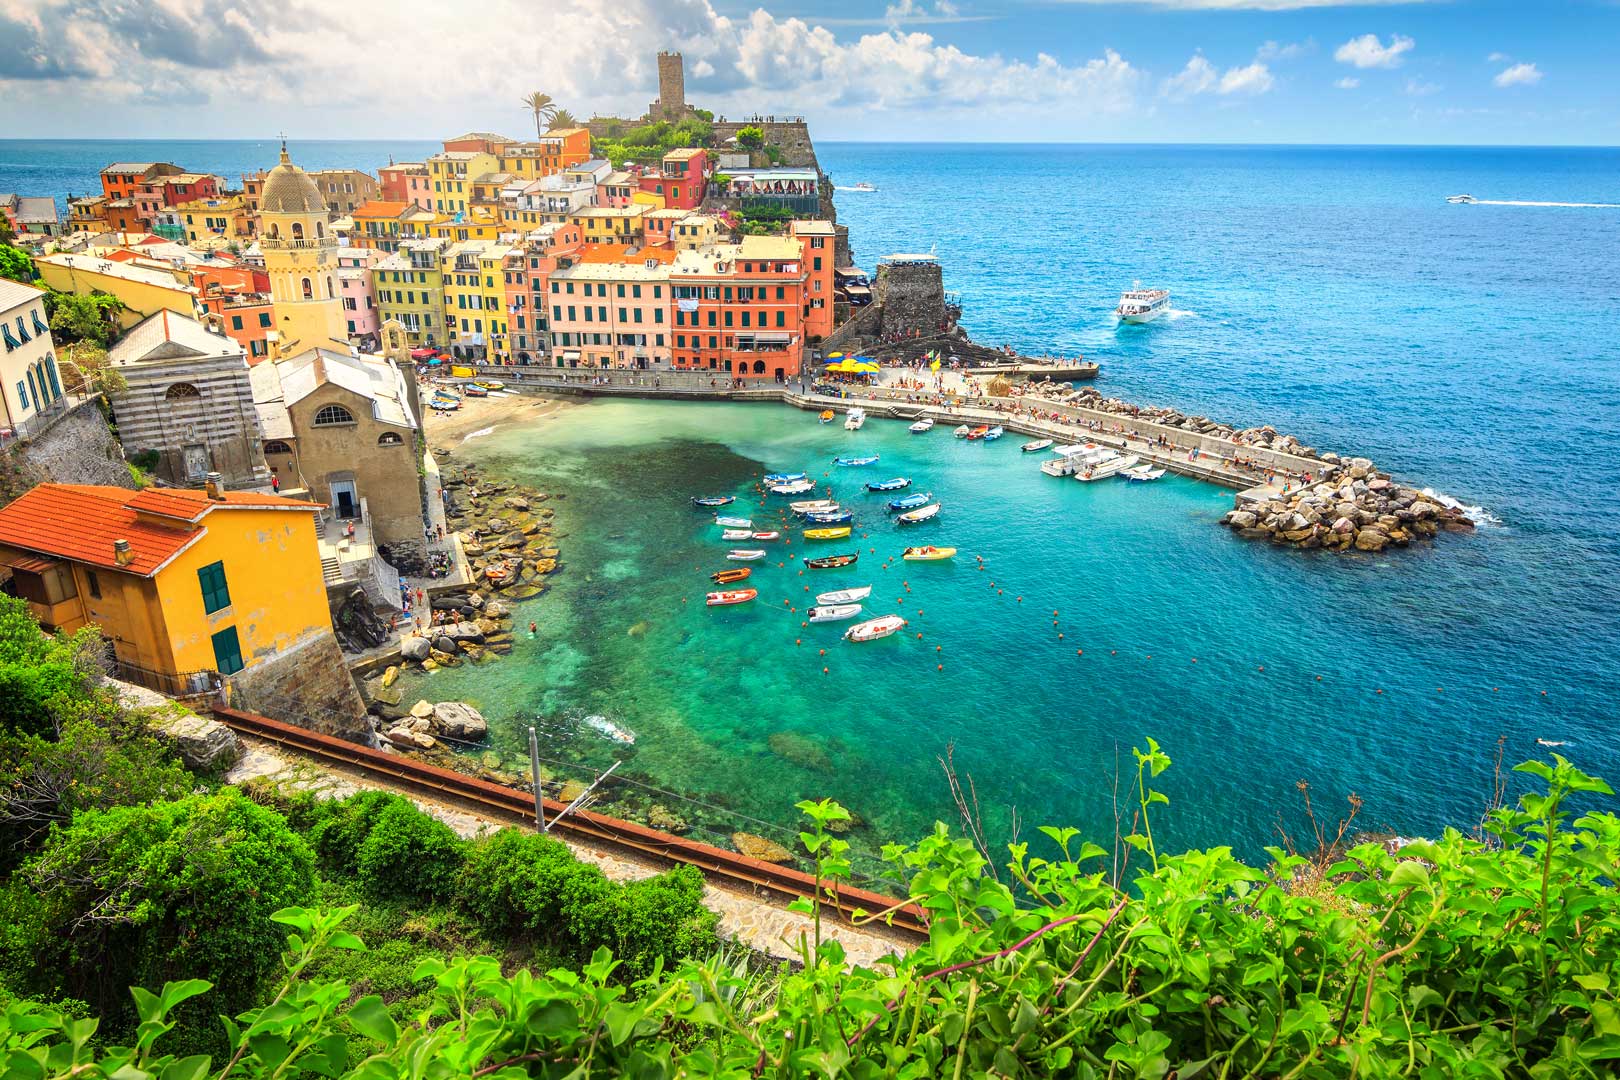 Vacanta in Genova si Cinque Terre – 190 euro (zbor si cazare 4 nopti)